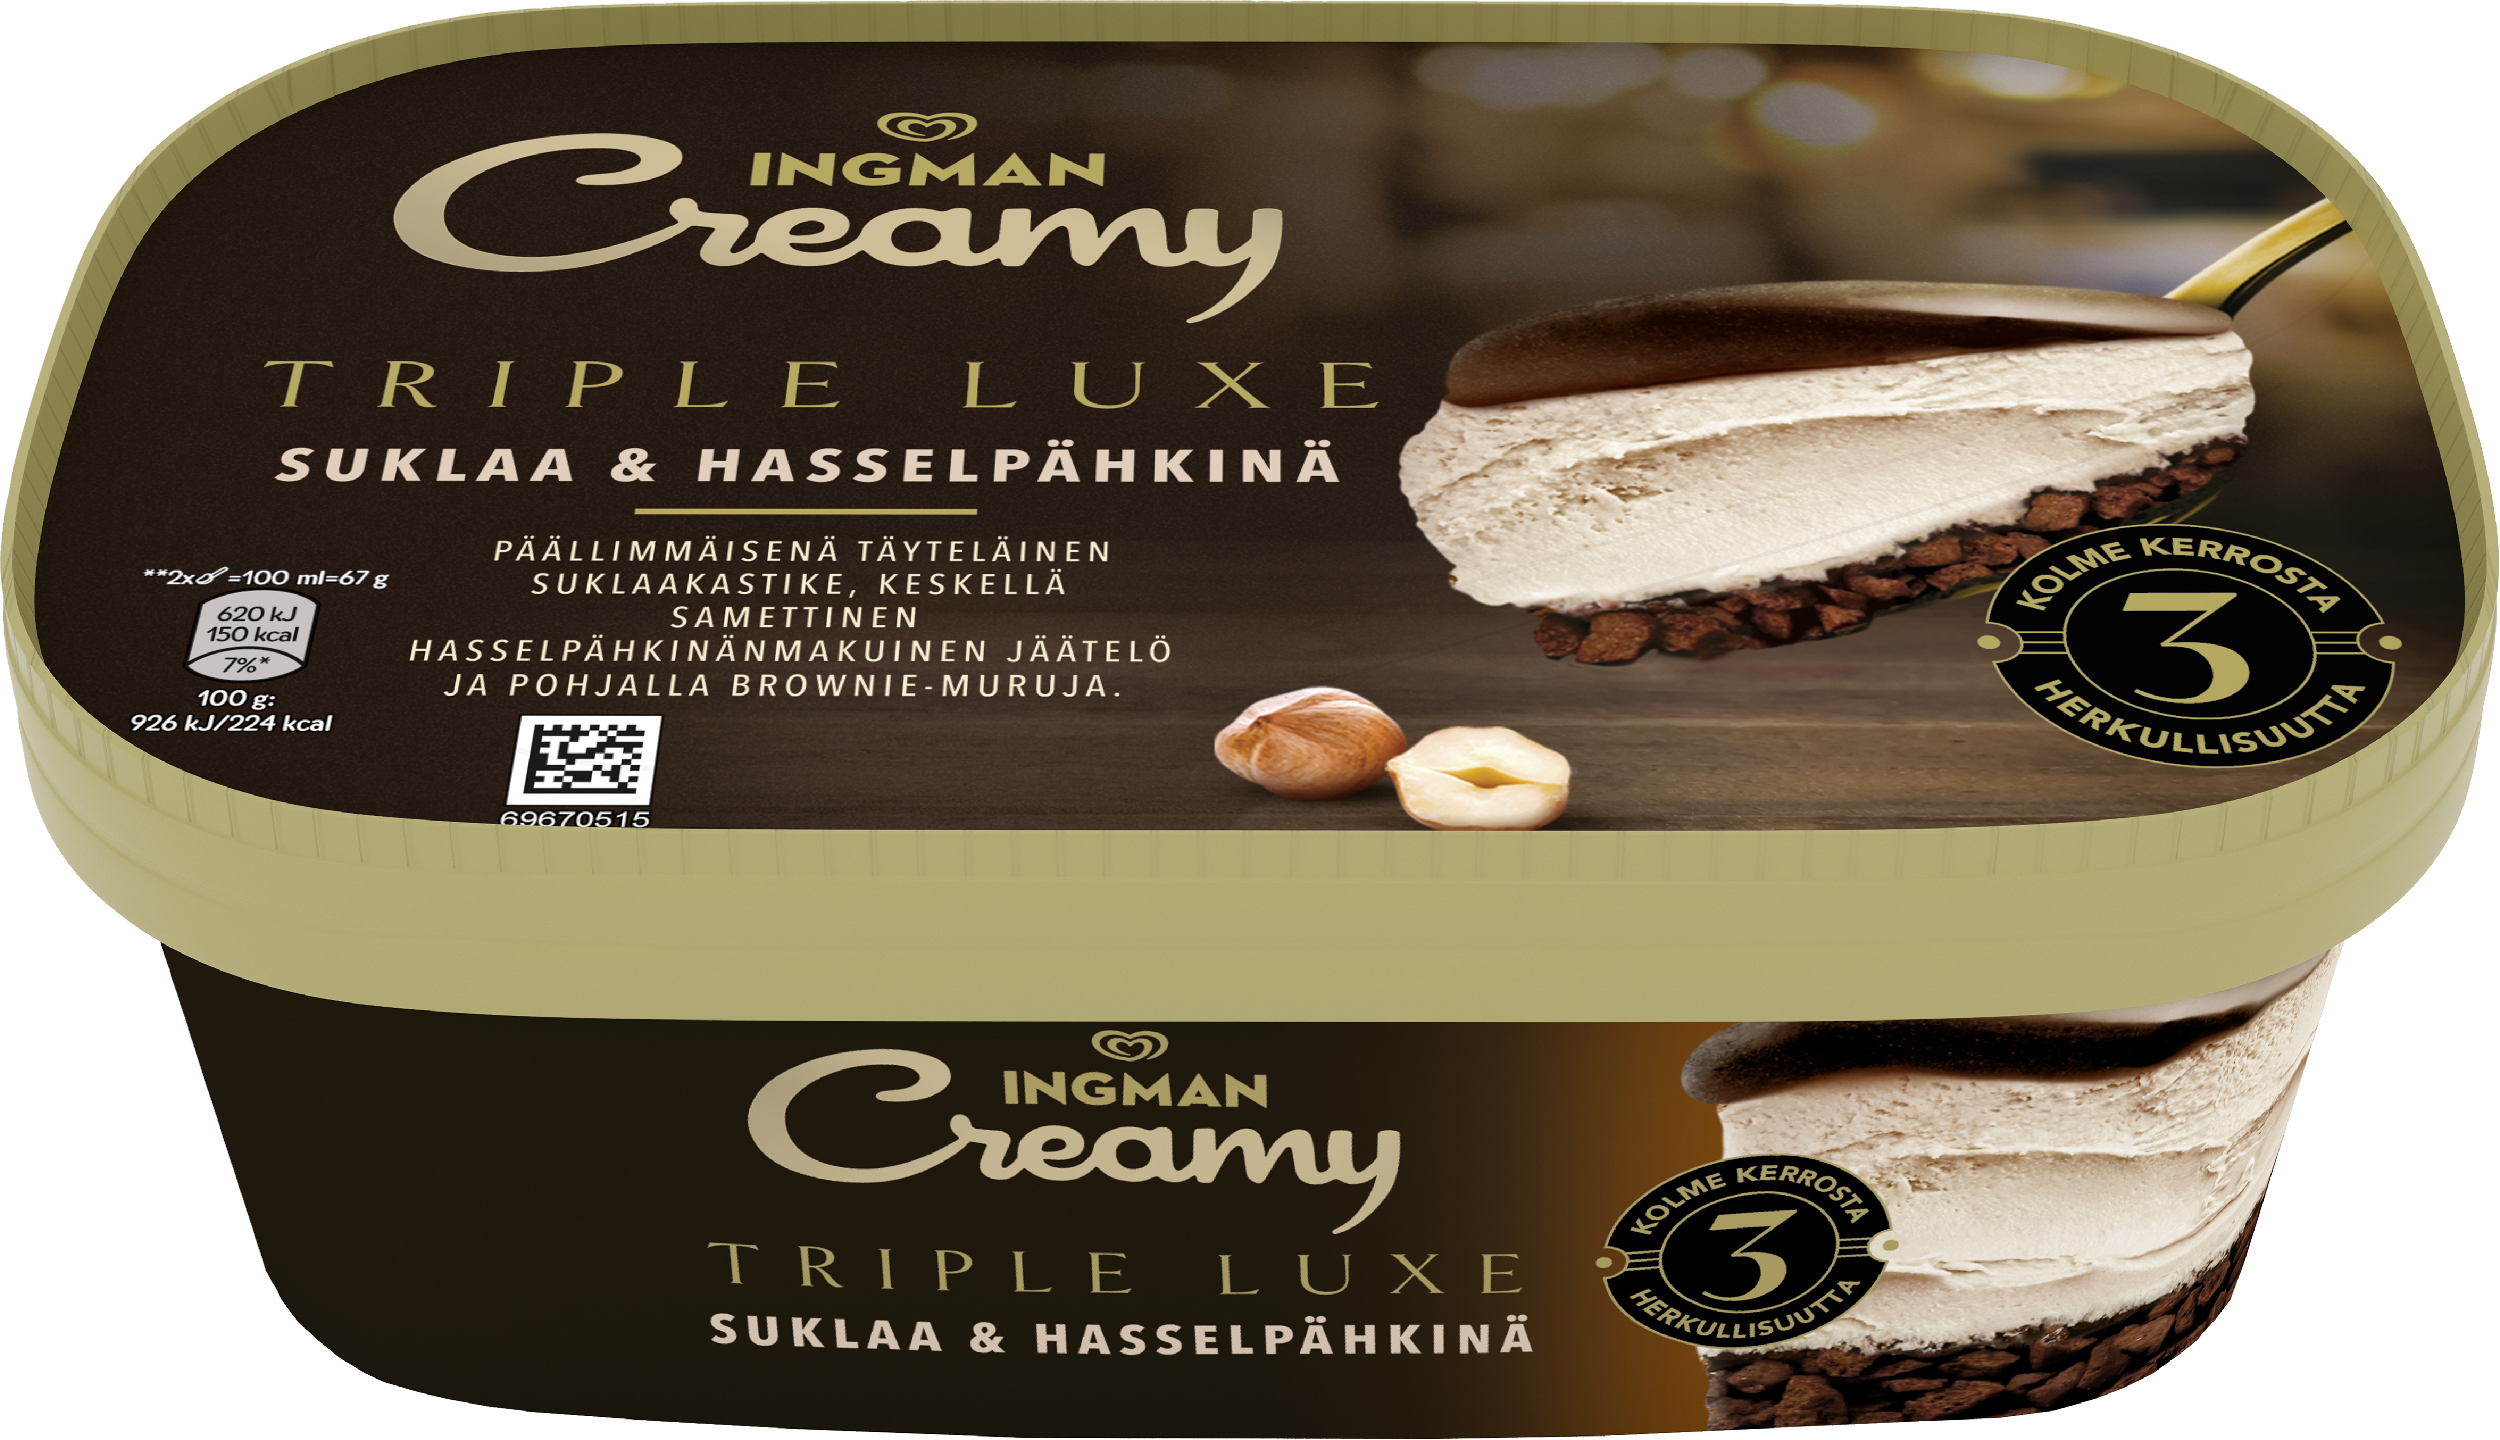 Ingman Creamy Triple Luxe Suklaa & hasselpähkinä Jäätelö 650ml/440g